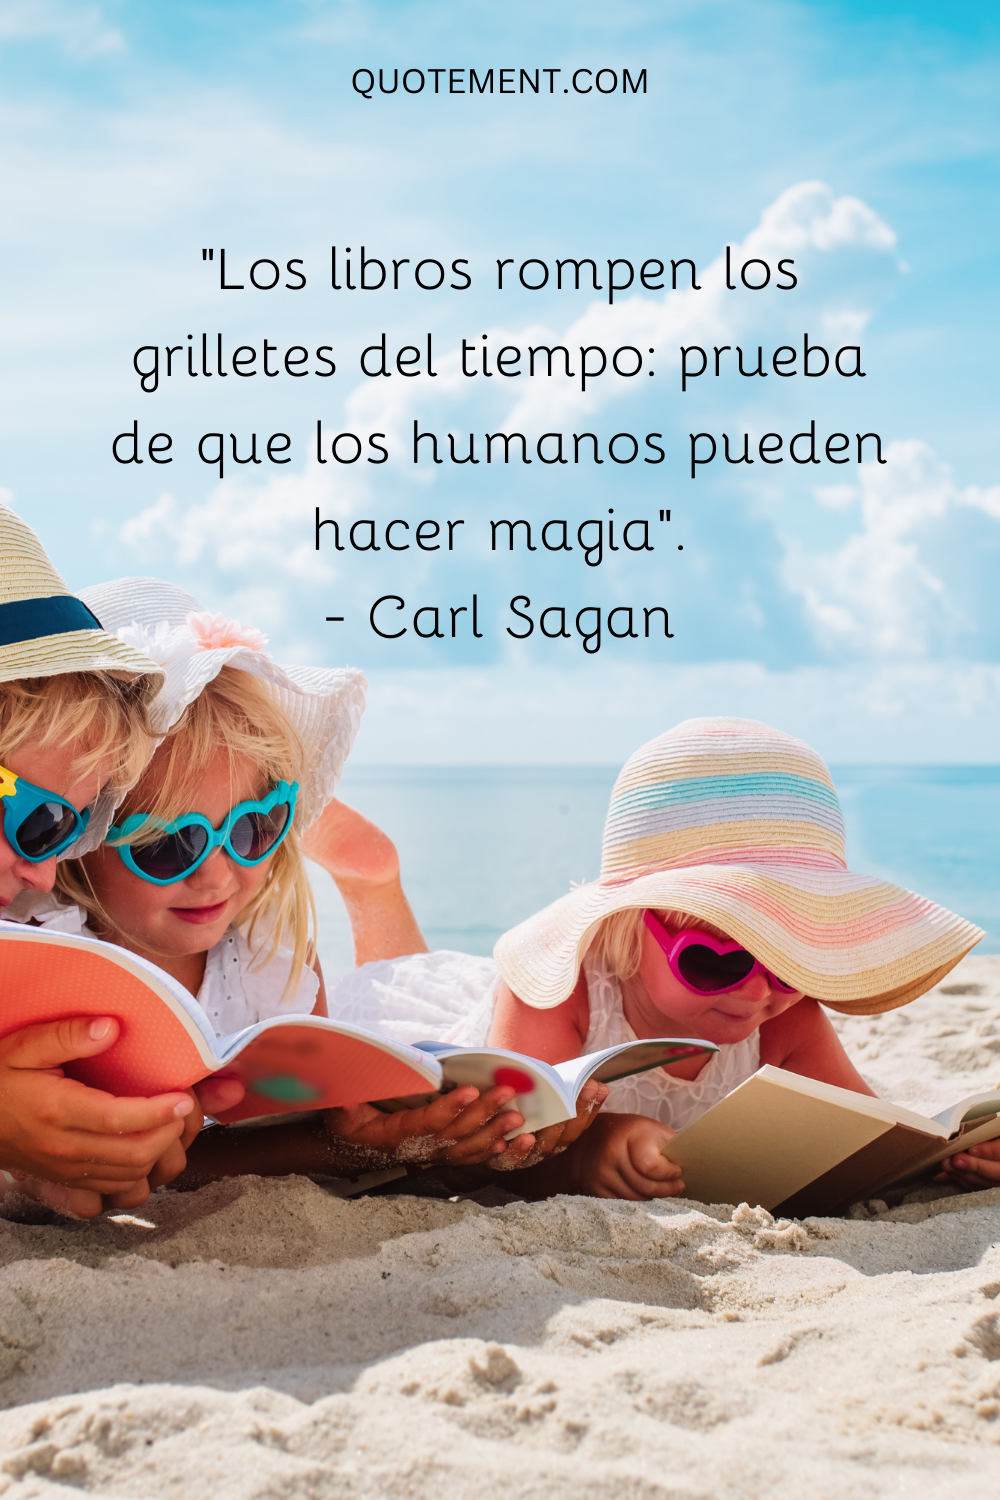 "Los libros rompen los grilletes del tiempo: prueba de que los humanos pueden hacer magia". - Carl Sagan